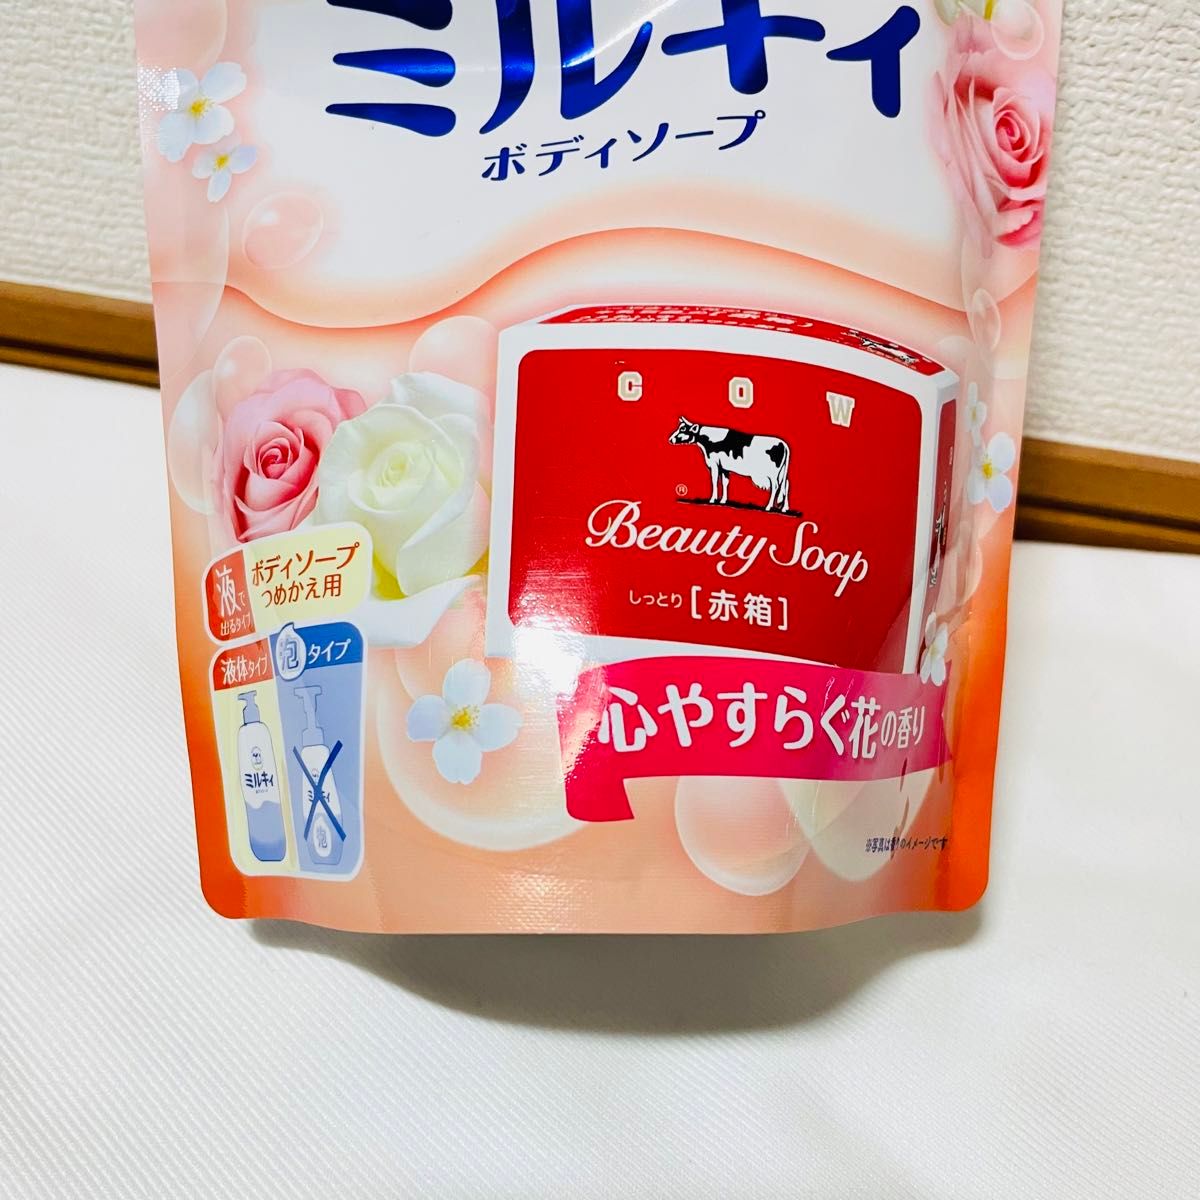 【数量限定品】 牛乳石鹸 ミルキィ 赤箱 ボディソープ 心やすらぐ花の香り 赤箱のいい香り つめかえ用 360ml × 4個